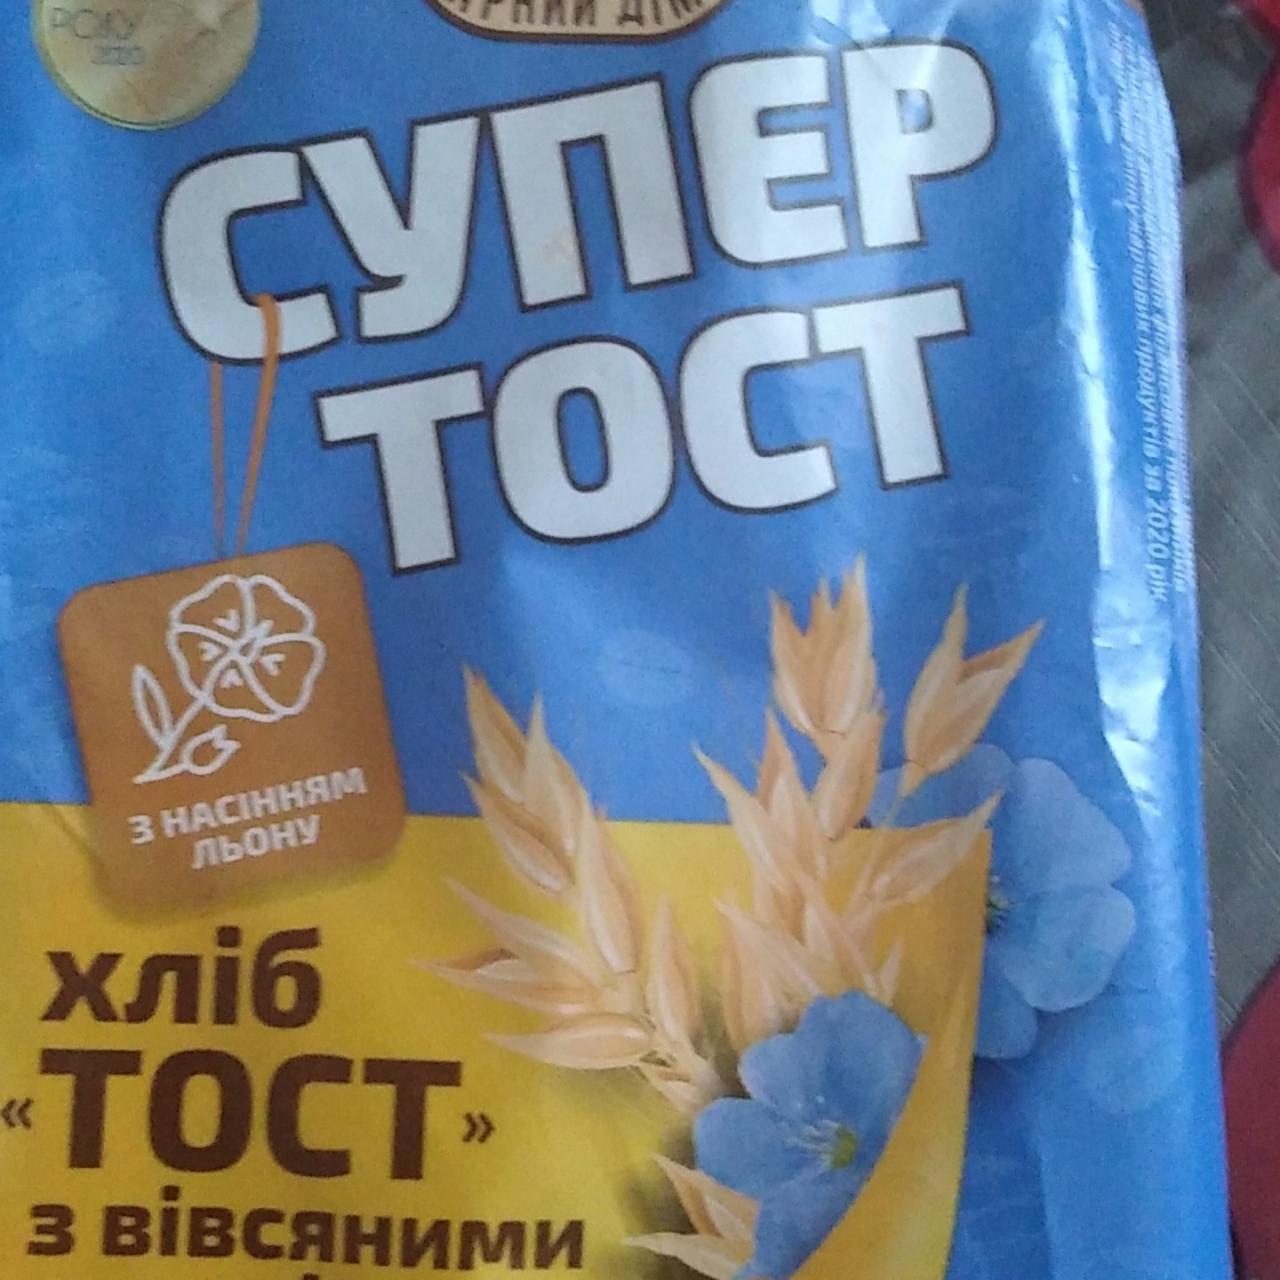 Фото - Хлеб нарезной с овсяными хлопьями и семенами льна Супер Тост Київхліб